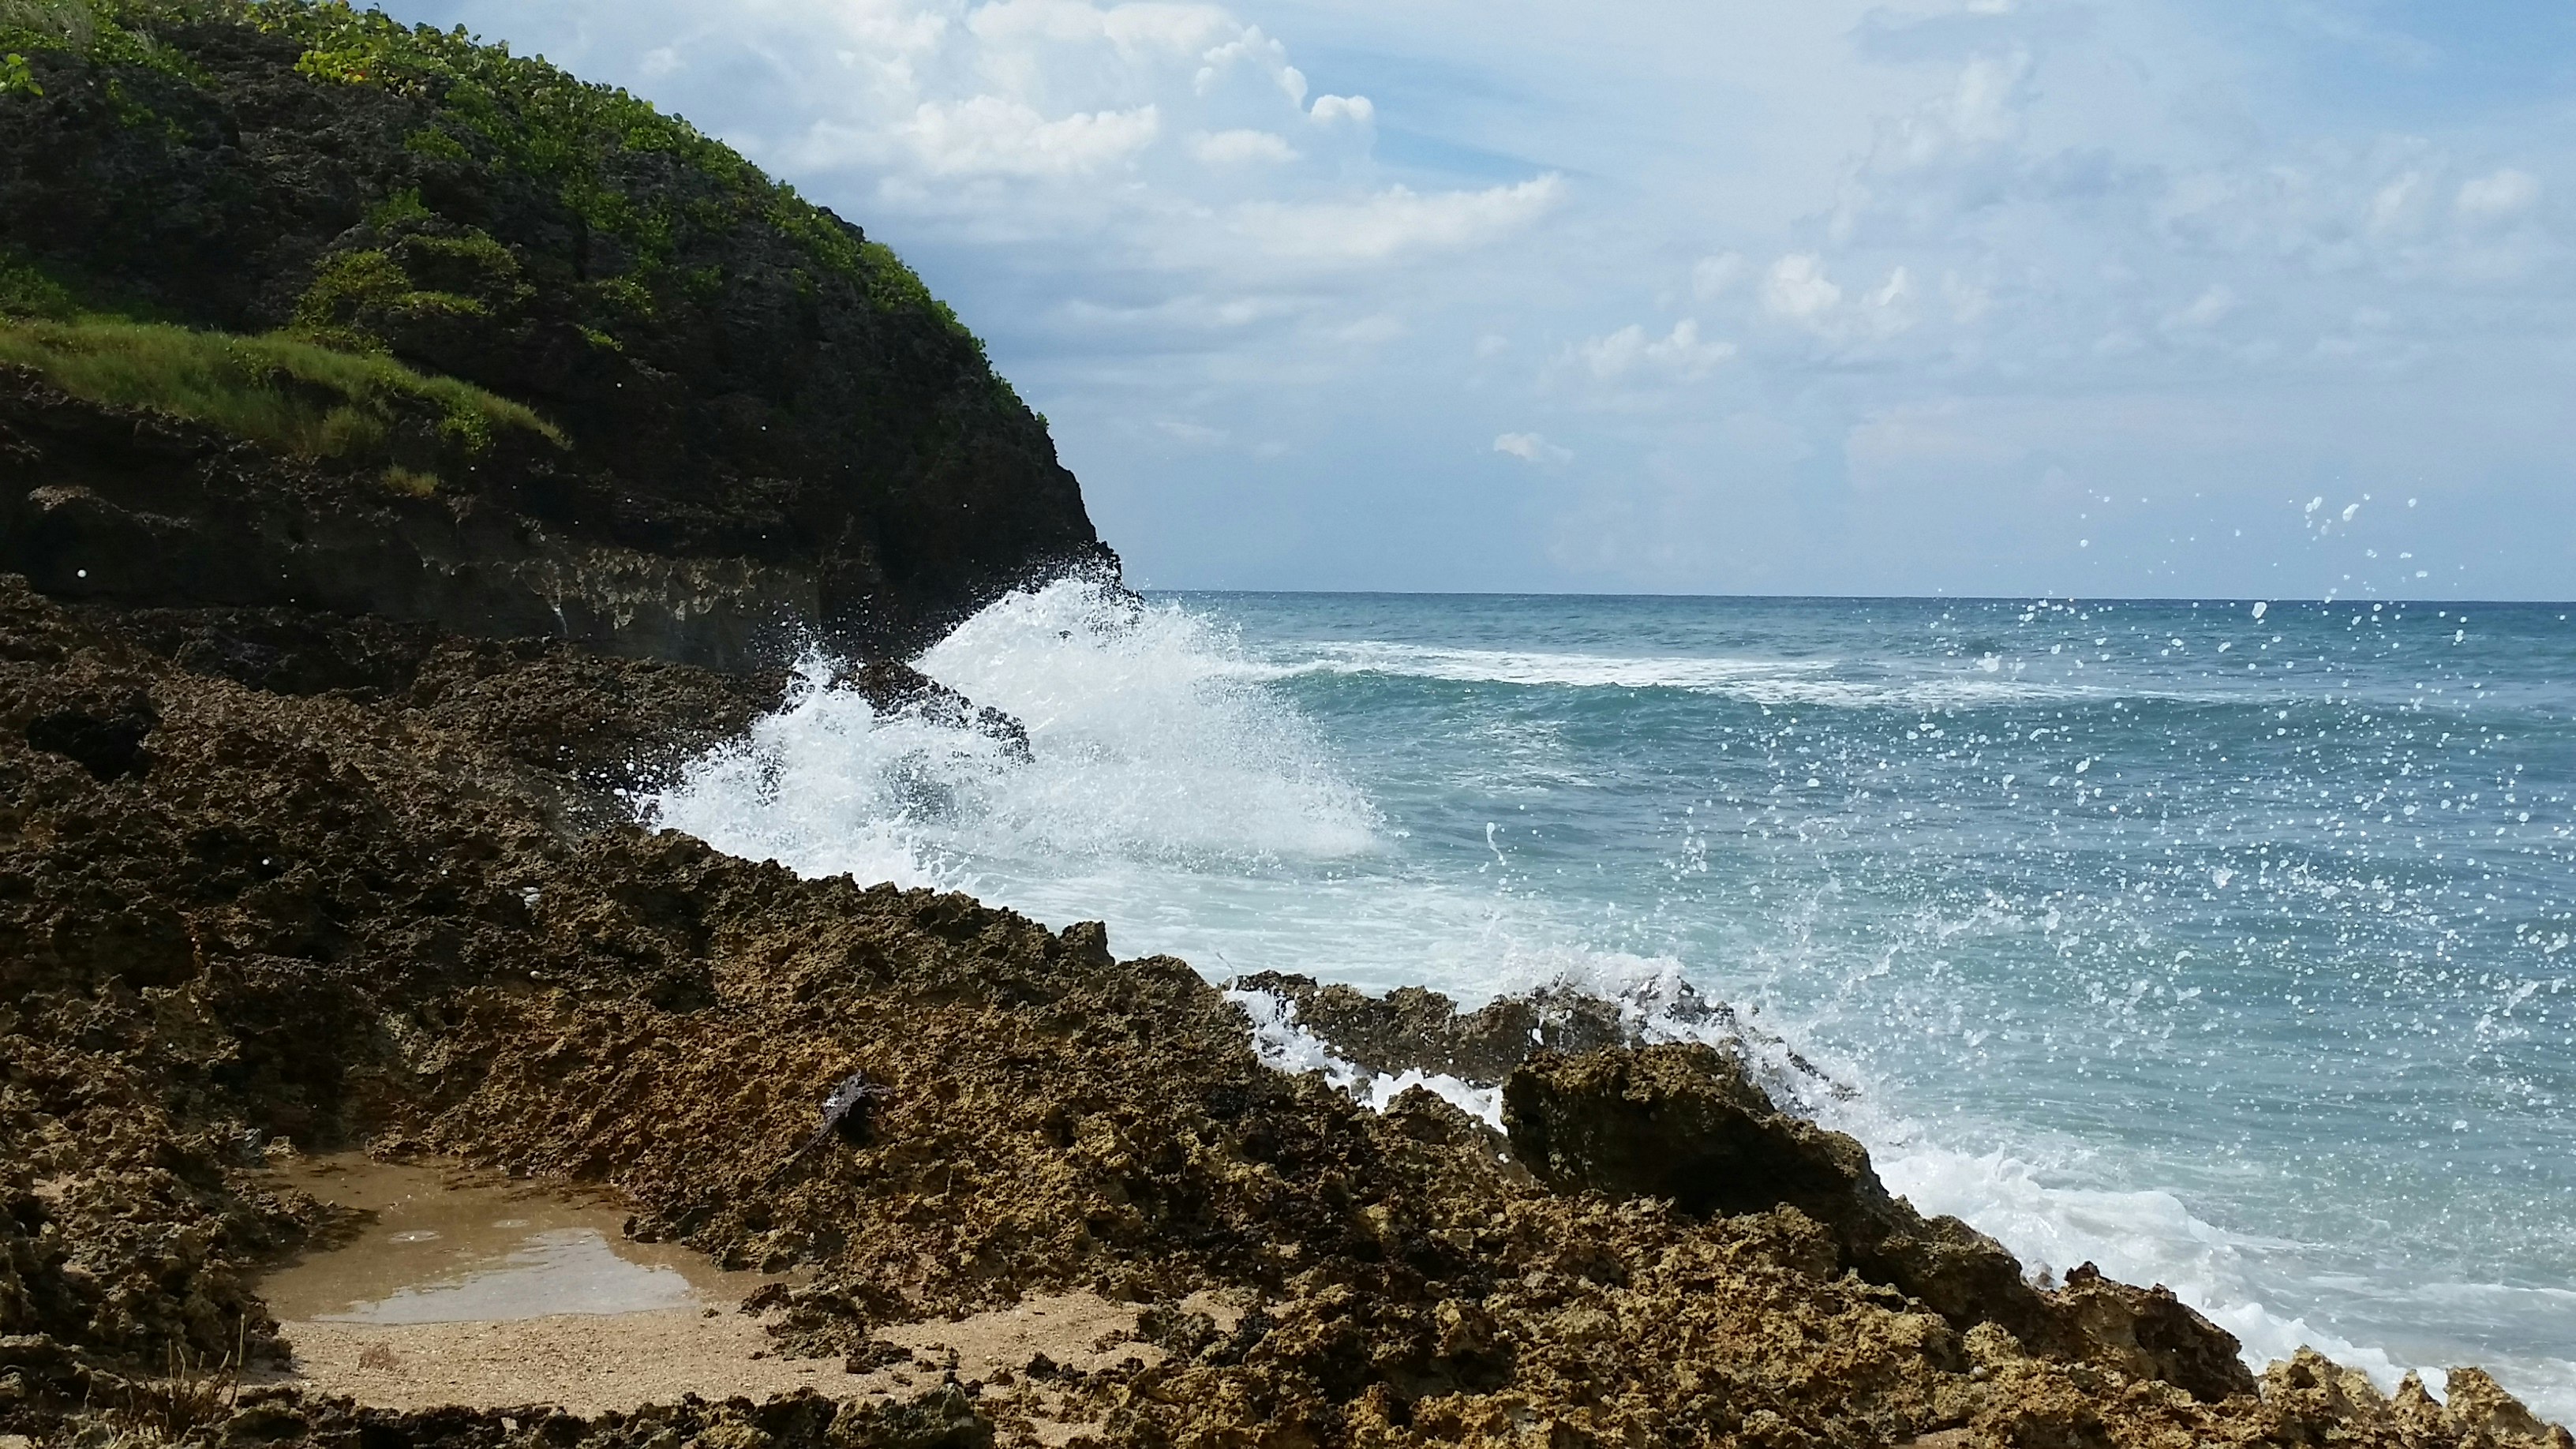 sea waves crashing through rock shore